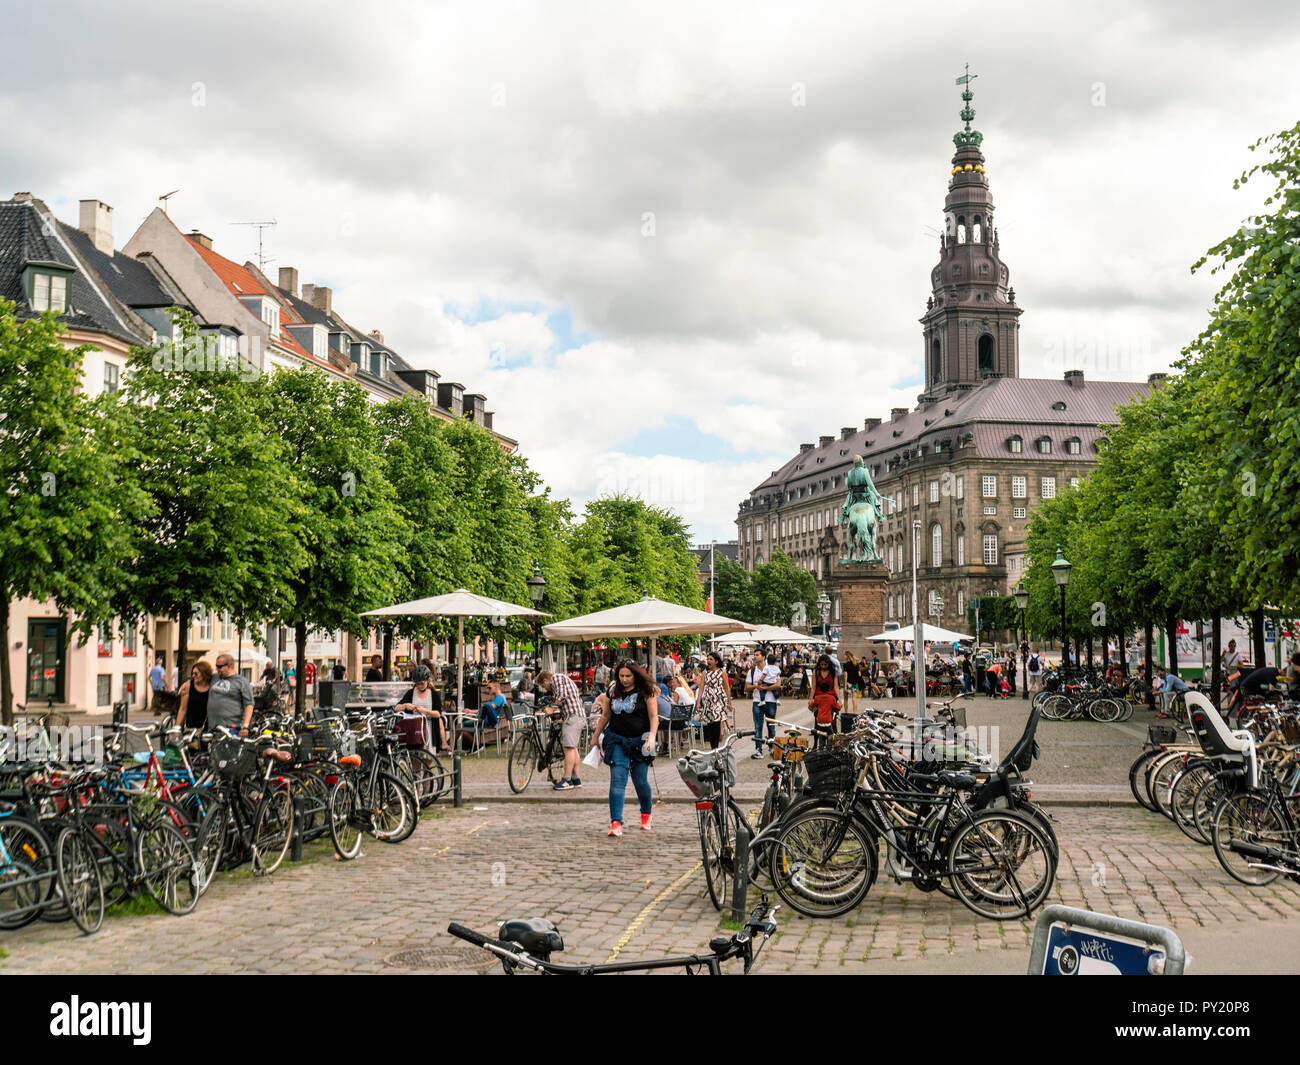 Hojbro Plads, place au centre de Copenhague vu par jour nuageux, Copenhague, Danemark Banque D'Images